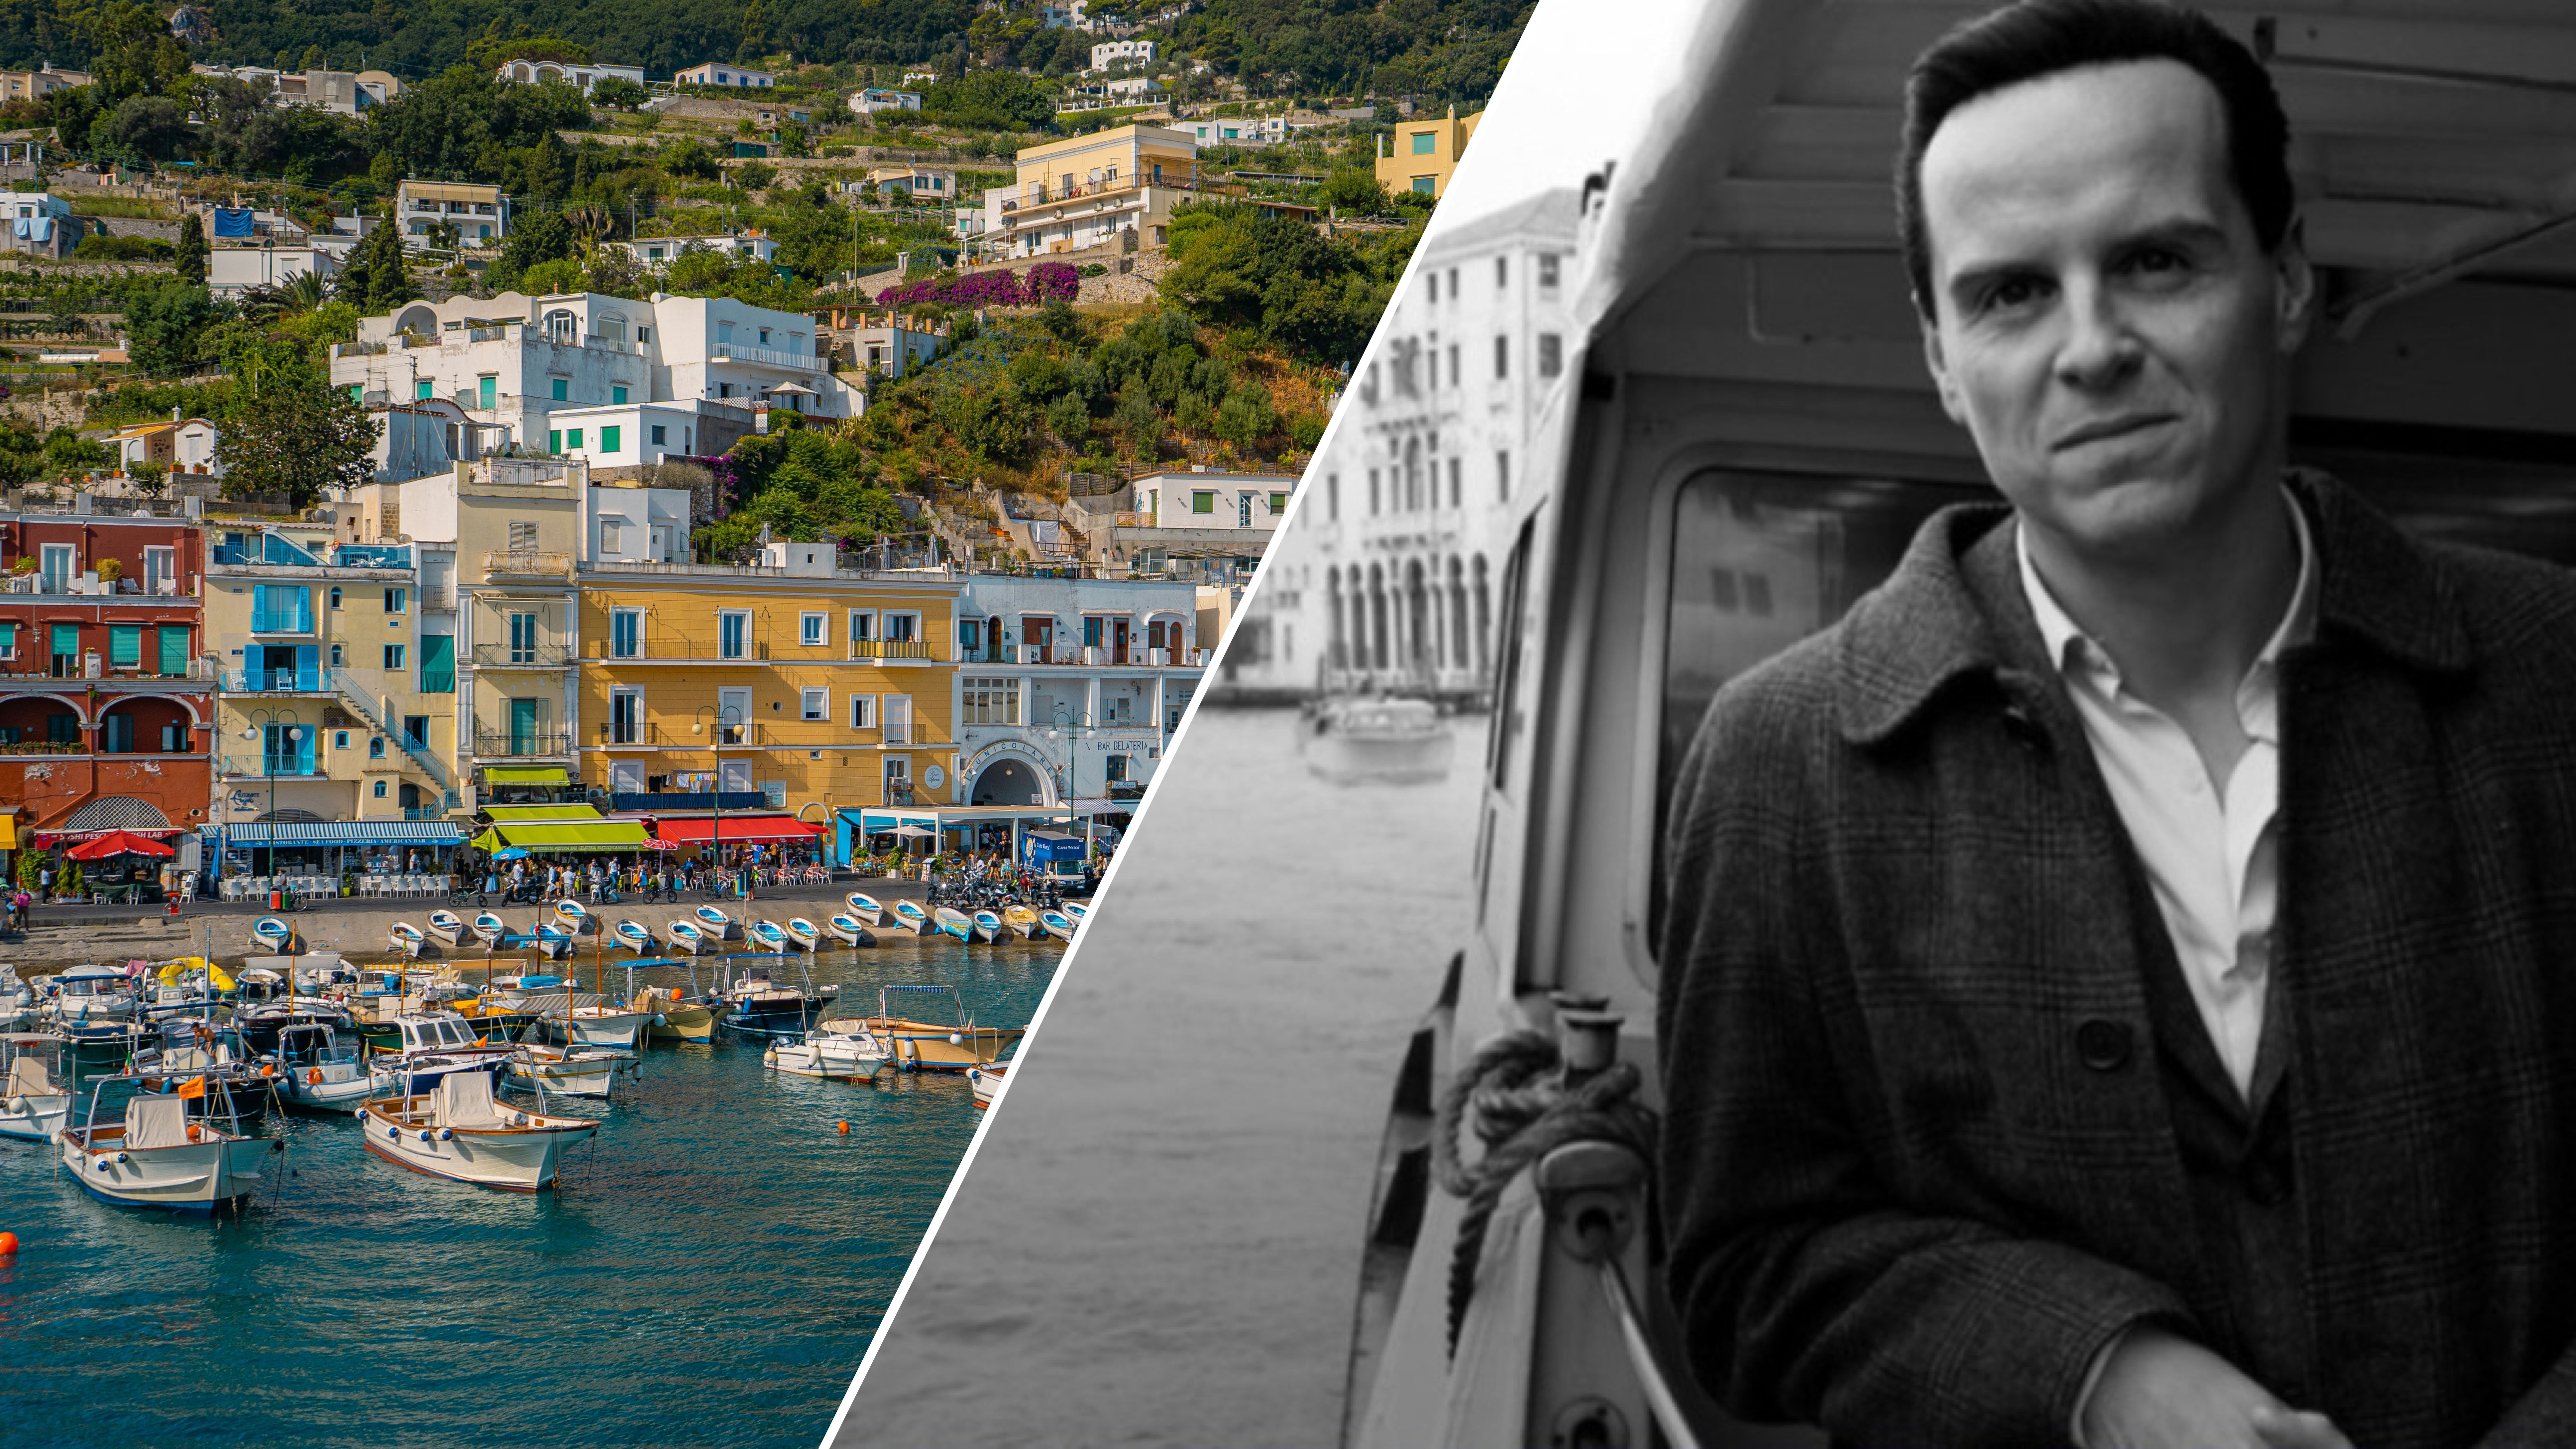 Итальянский поселок готовится к наплыву туристов после выхода сериала Netflix